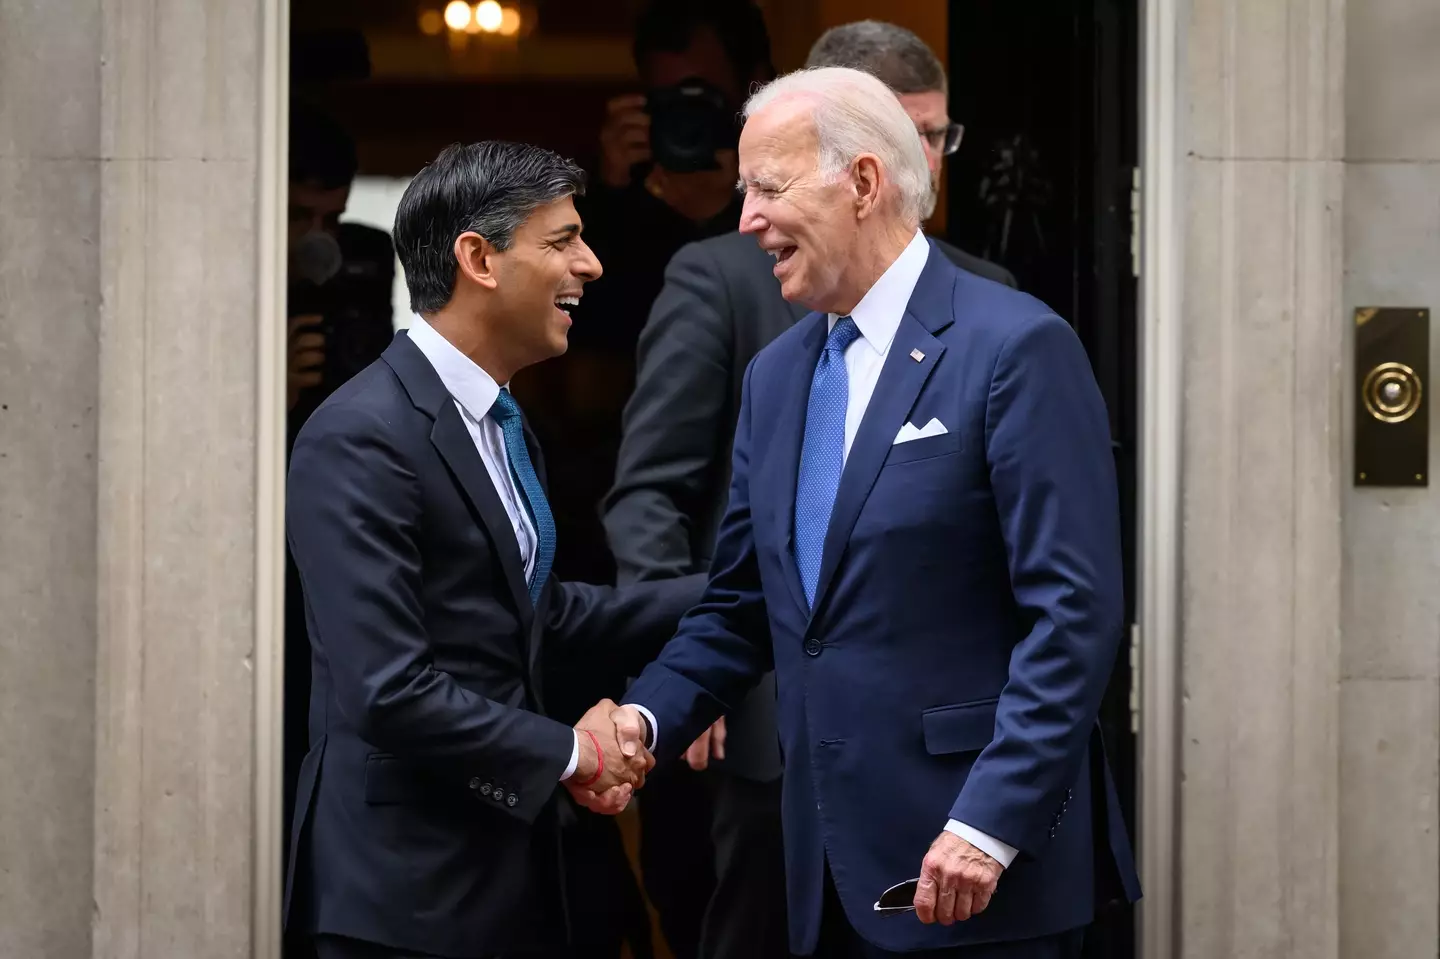 Biden visiting Rishi Sunak at Downing Street.